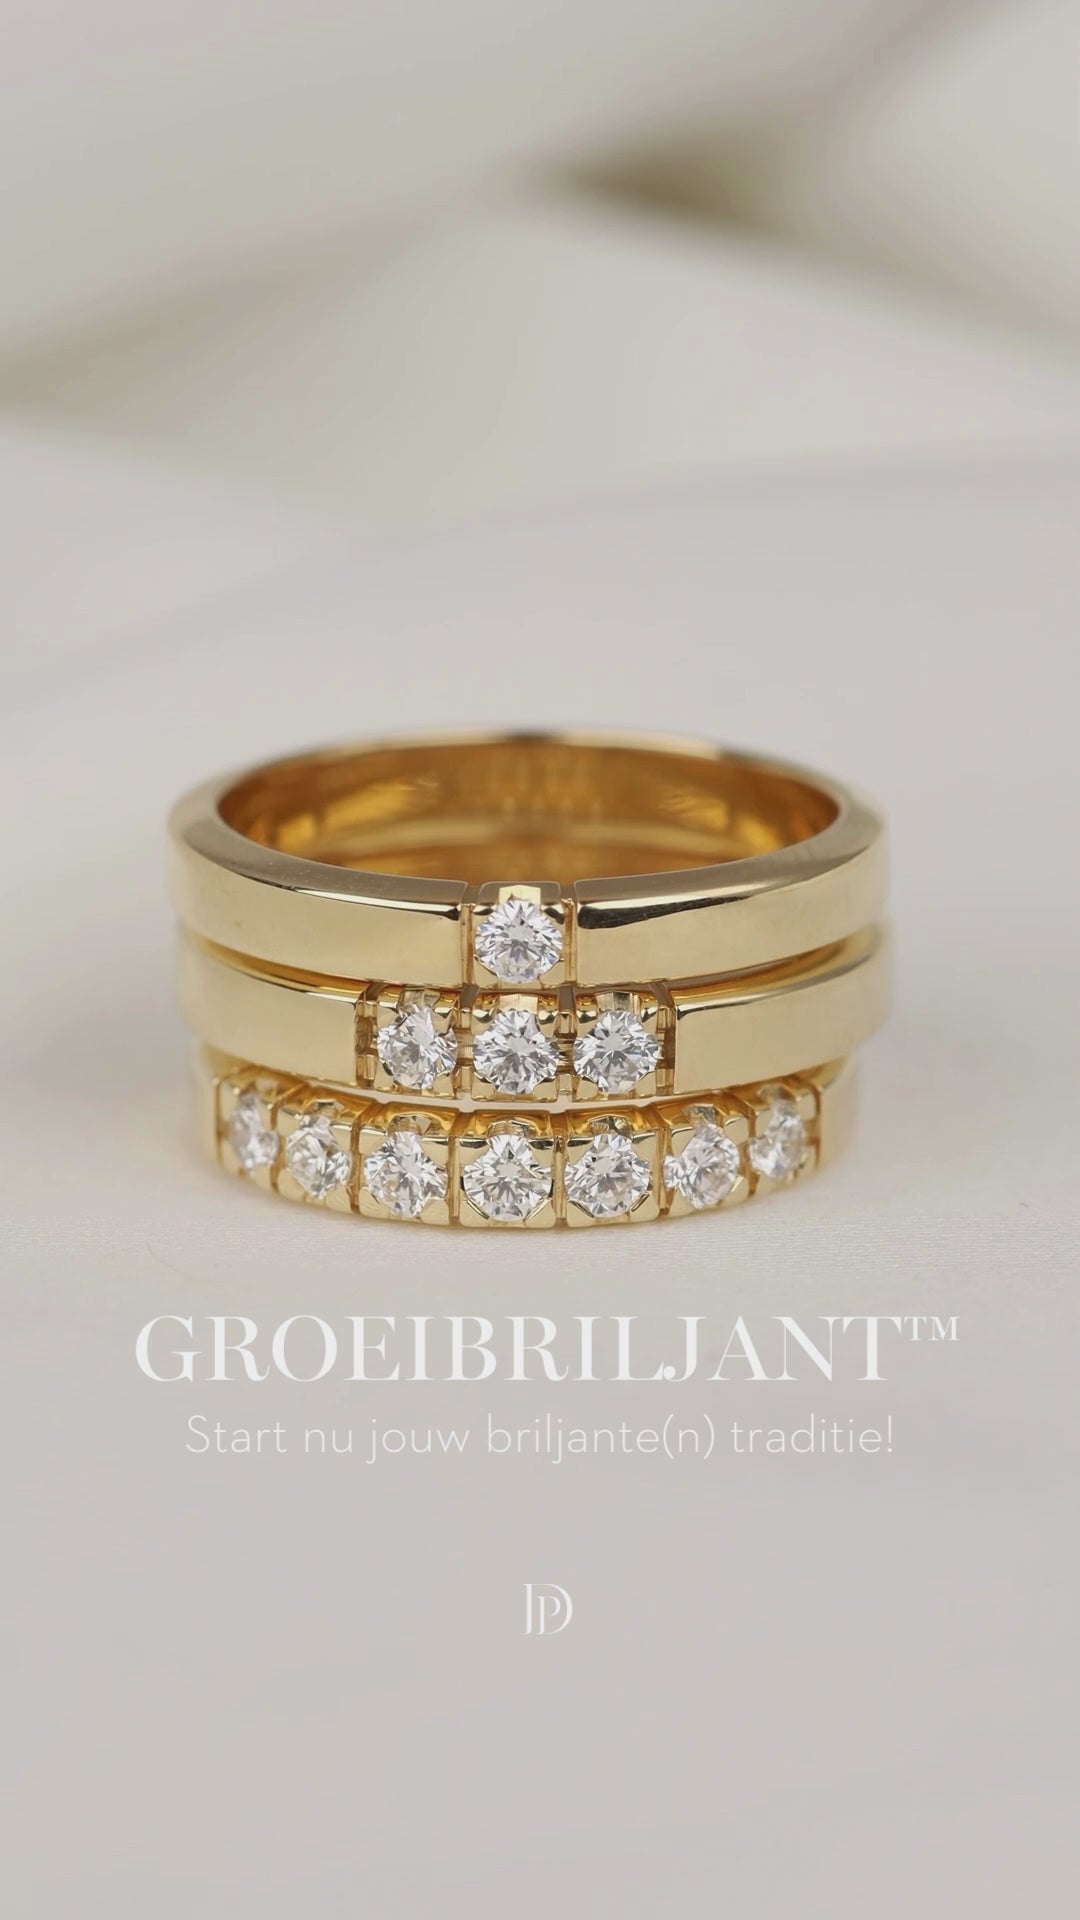 White gold alliance ring, 0.16 ct diamond, Groeibriljant